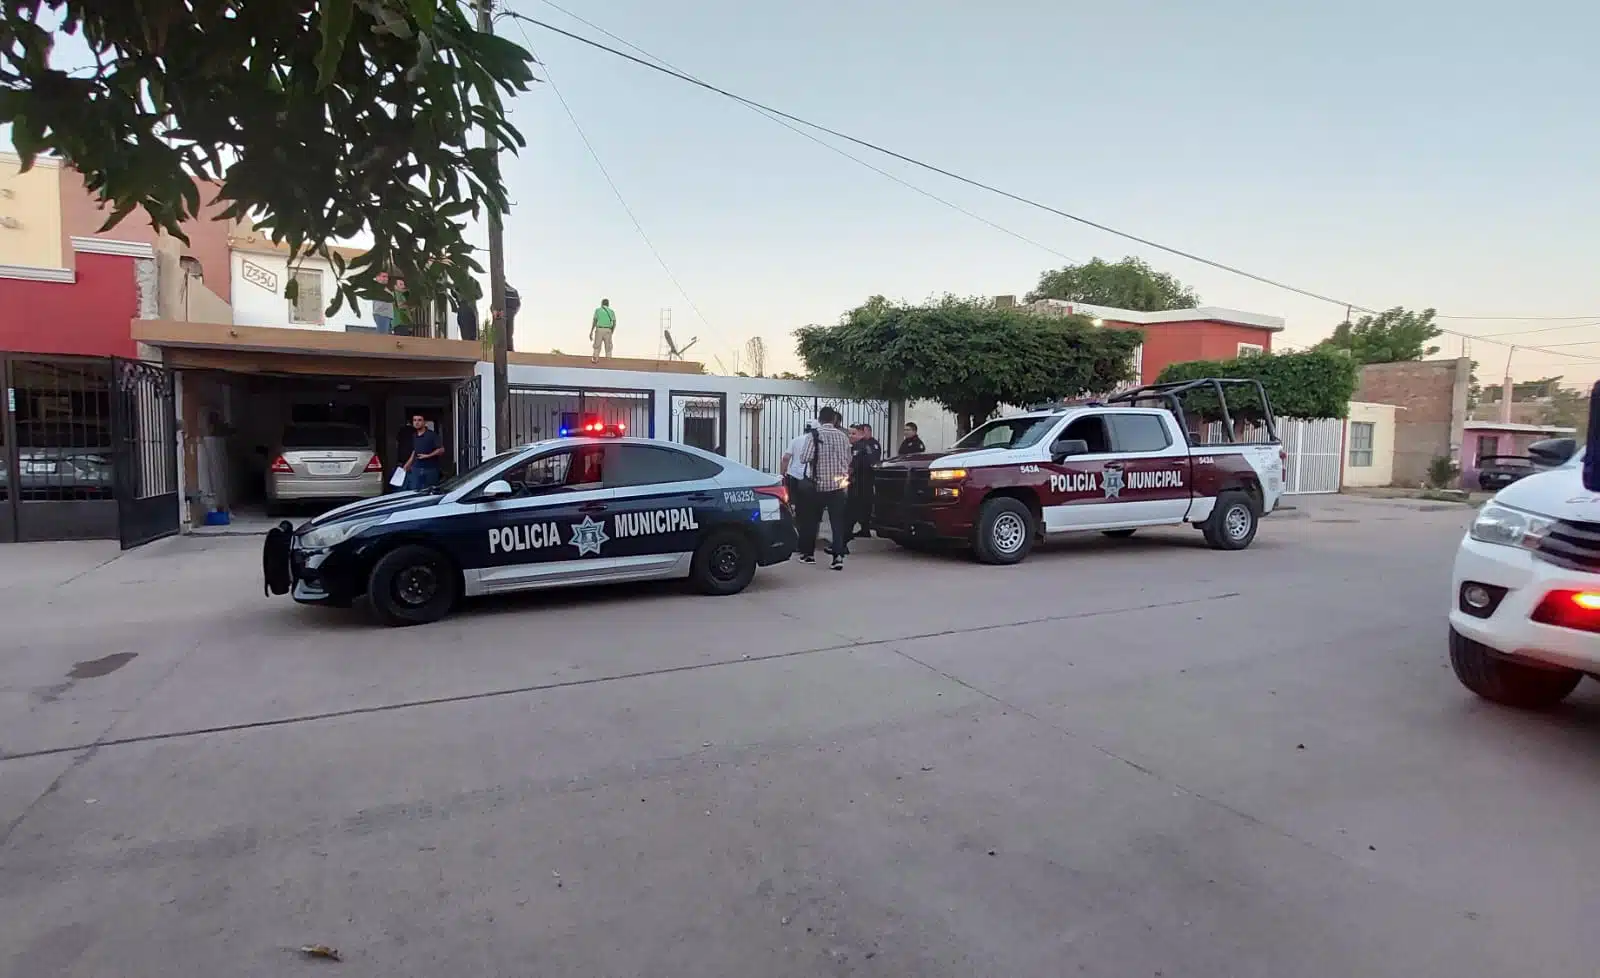 Policía Municipal afuera de una vivienda en Los Mochis